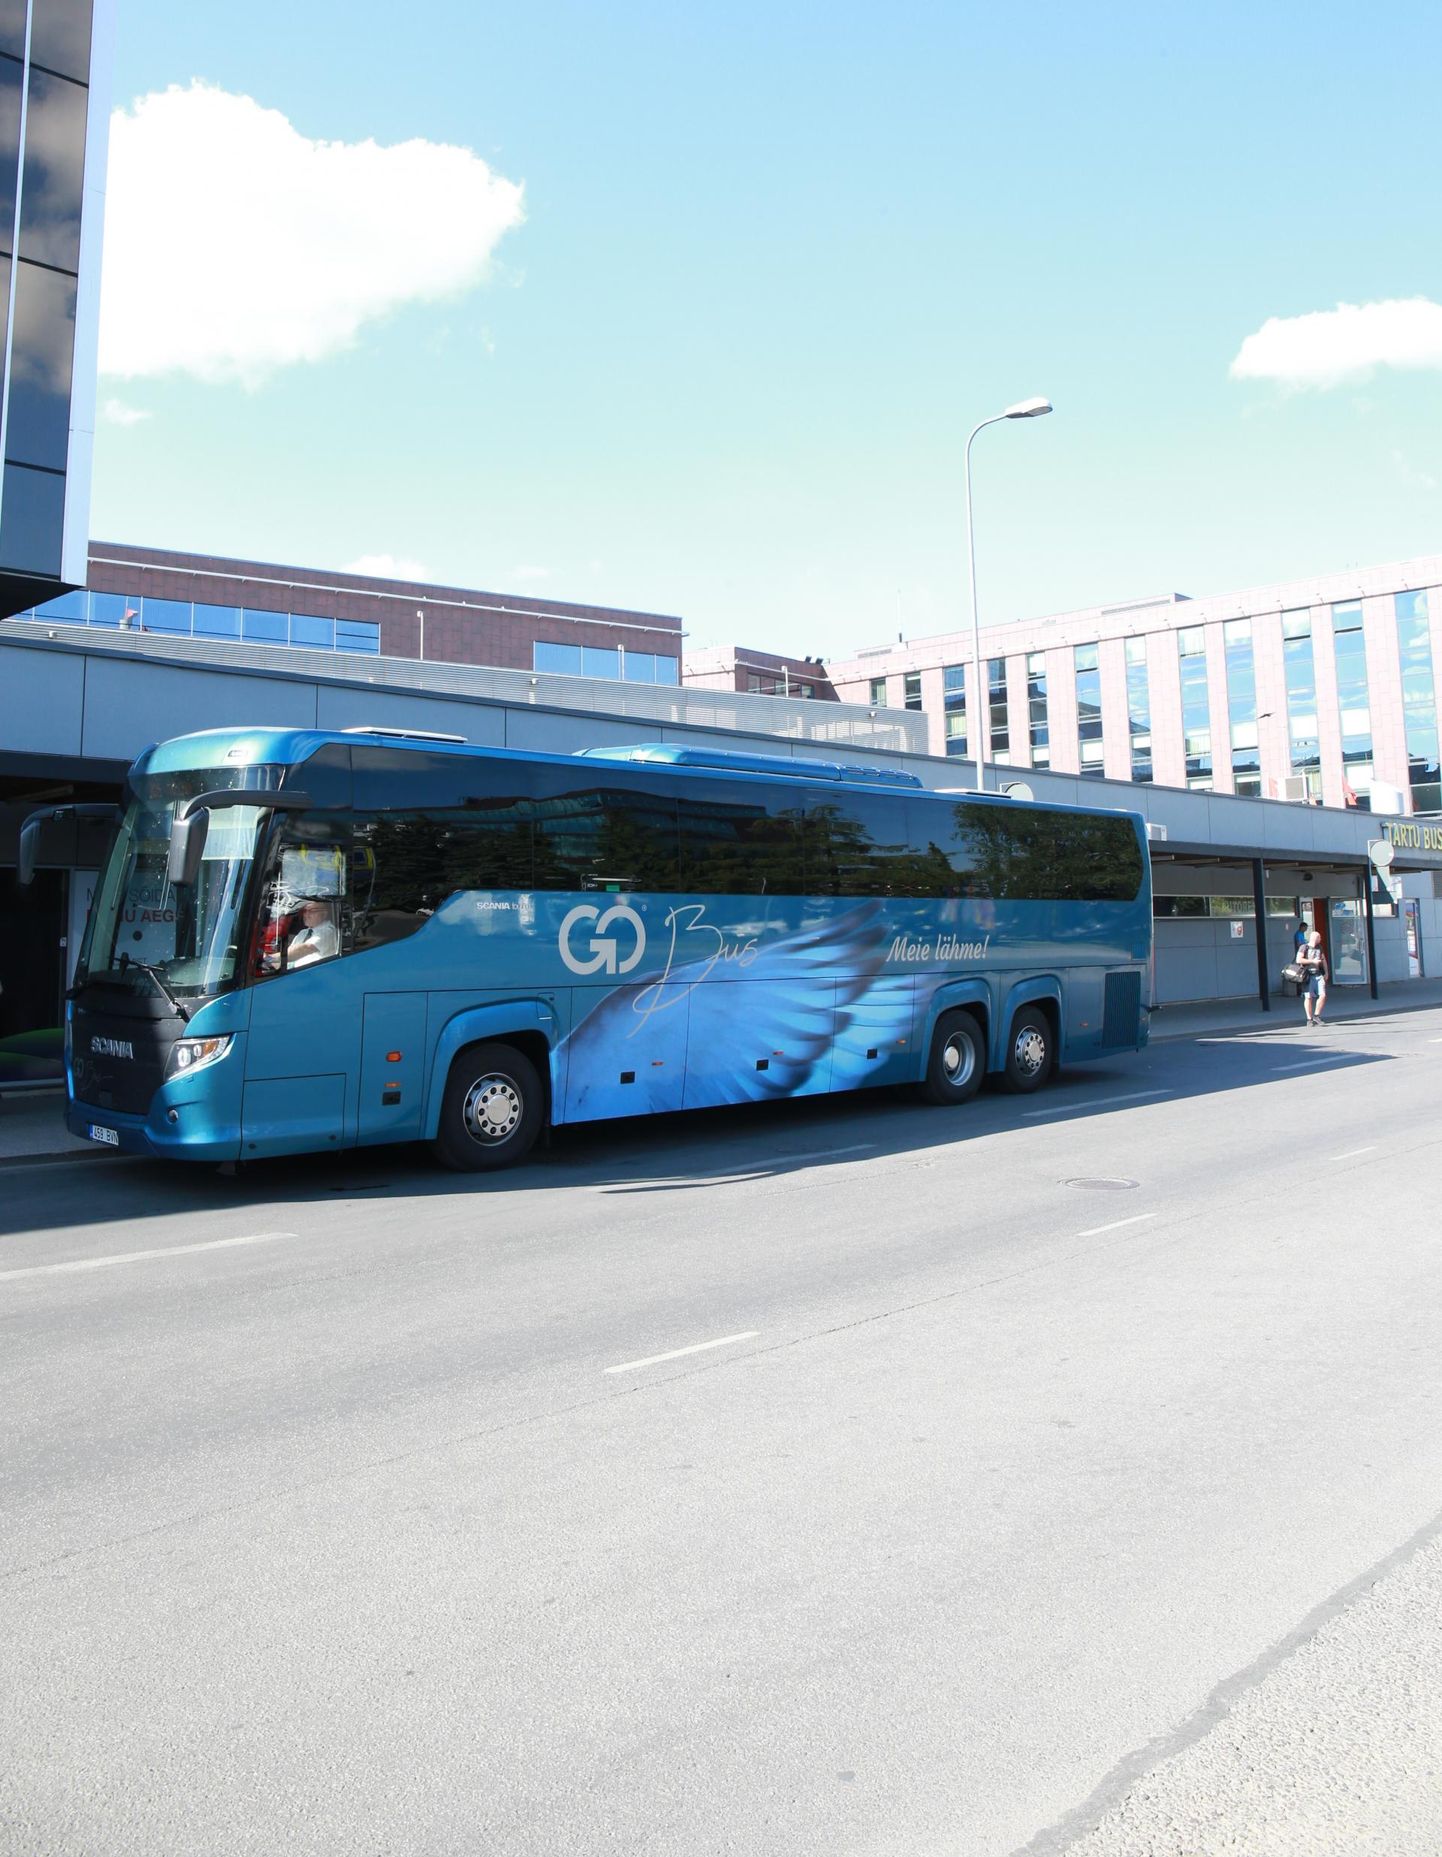 Alates 1. juulist ei pea Tartu maakonnaliini bussidega sõites piletit ostma.